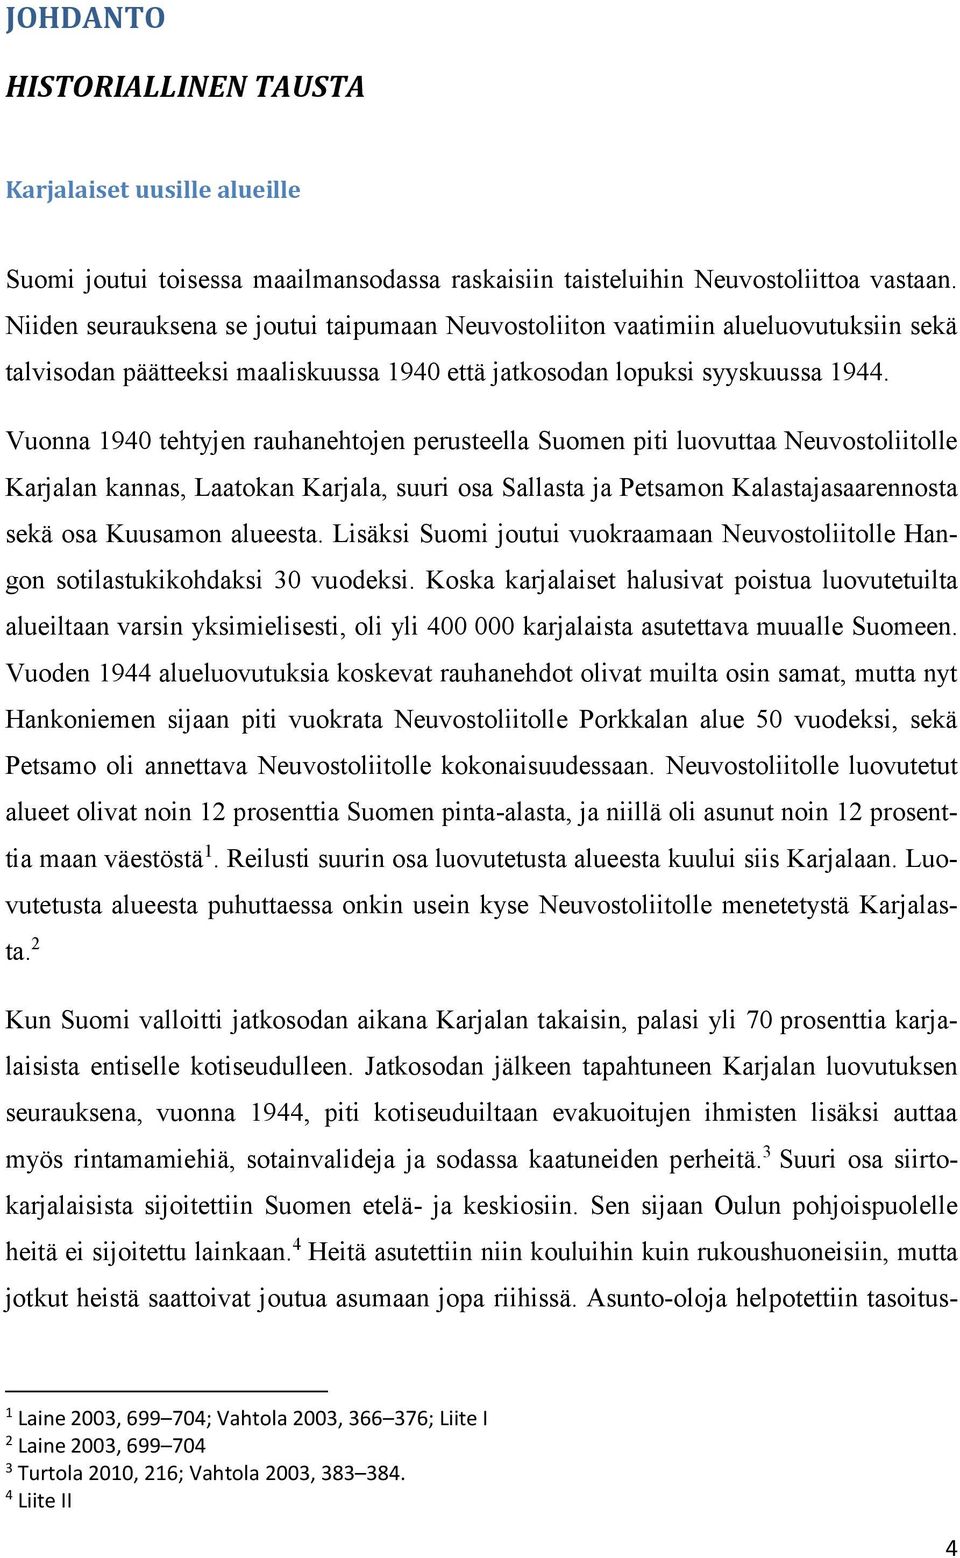 Vuonna 1940 tehtyjen rauhanehtojen perusteella Suomen piti luovuttaa Neuvostoliitolle Karjalan kannas, Laatokan Karjala, suuri osa Sallasta ja Petsamon Kalastajasaarennosta sekä osa Kuusamon alueesta.